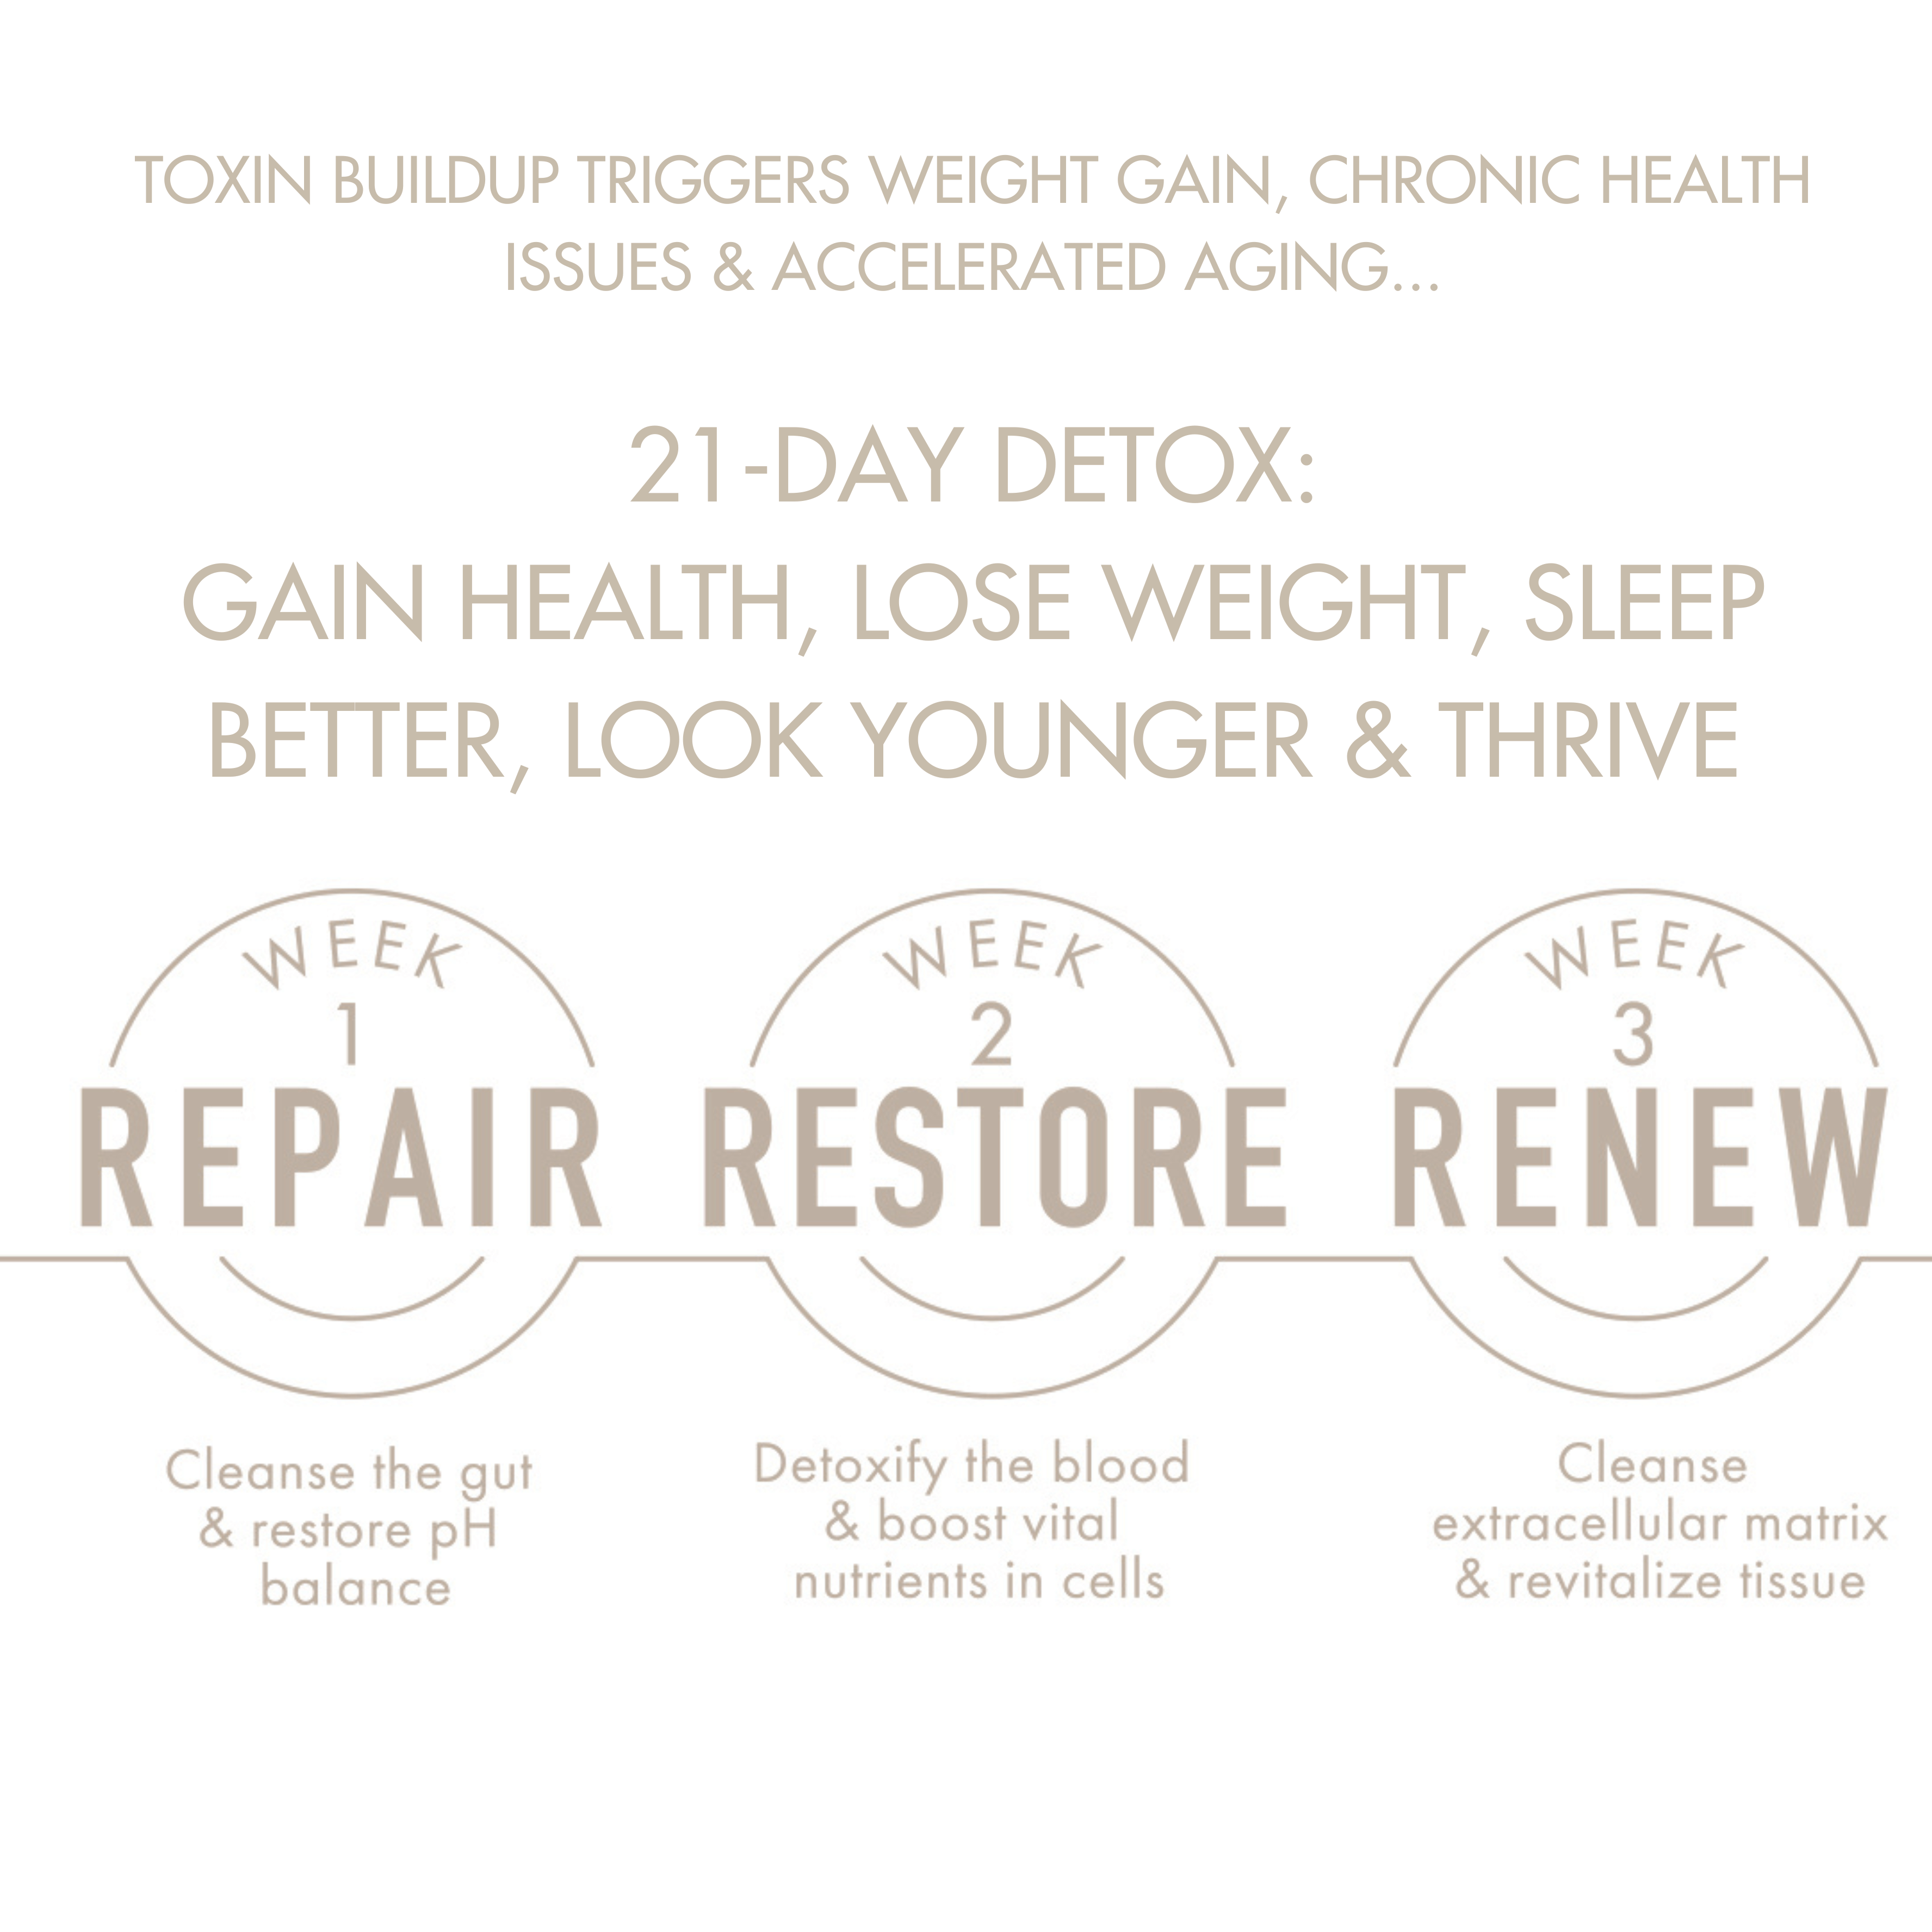 Repair, Restore, Renew 21-day detox process 